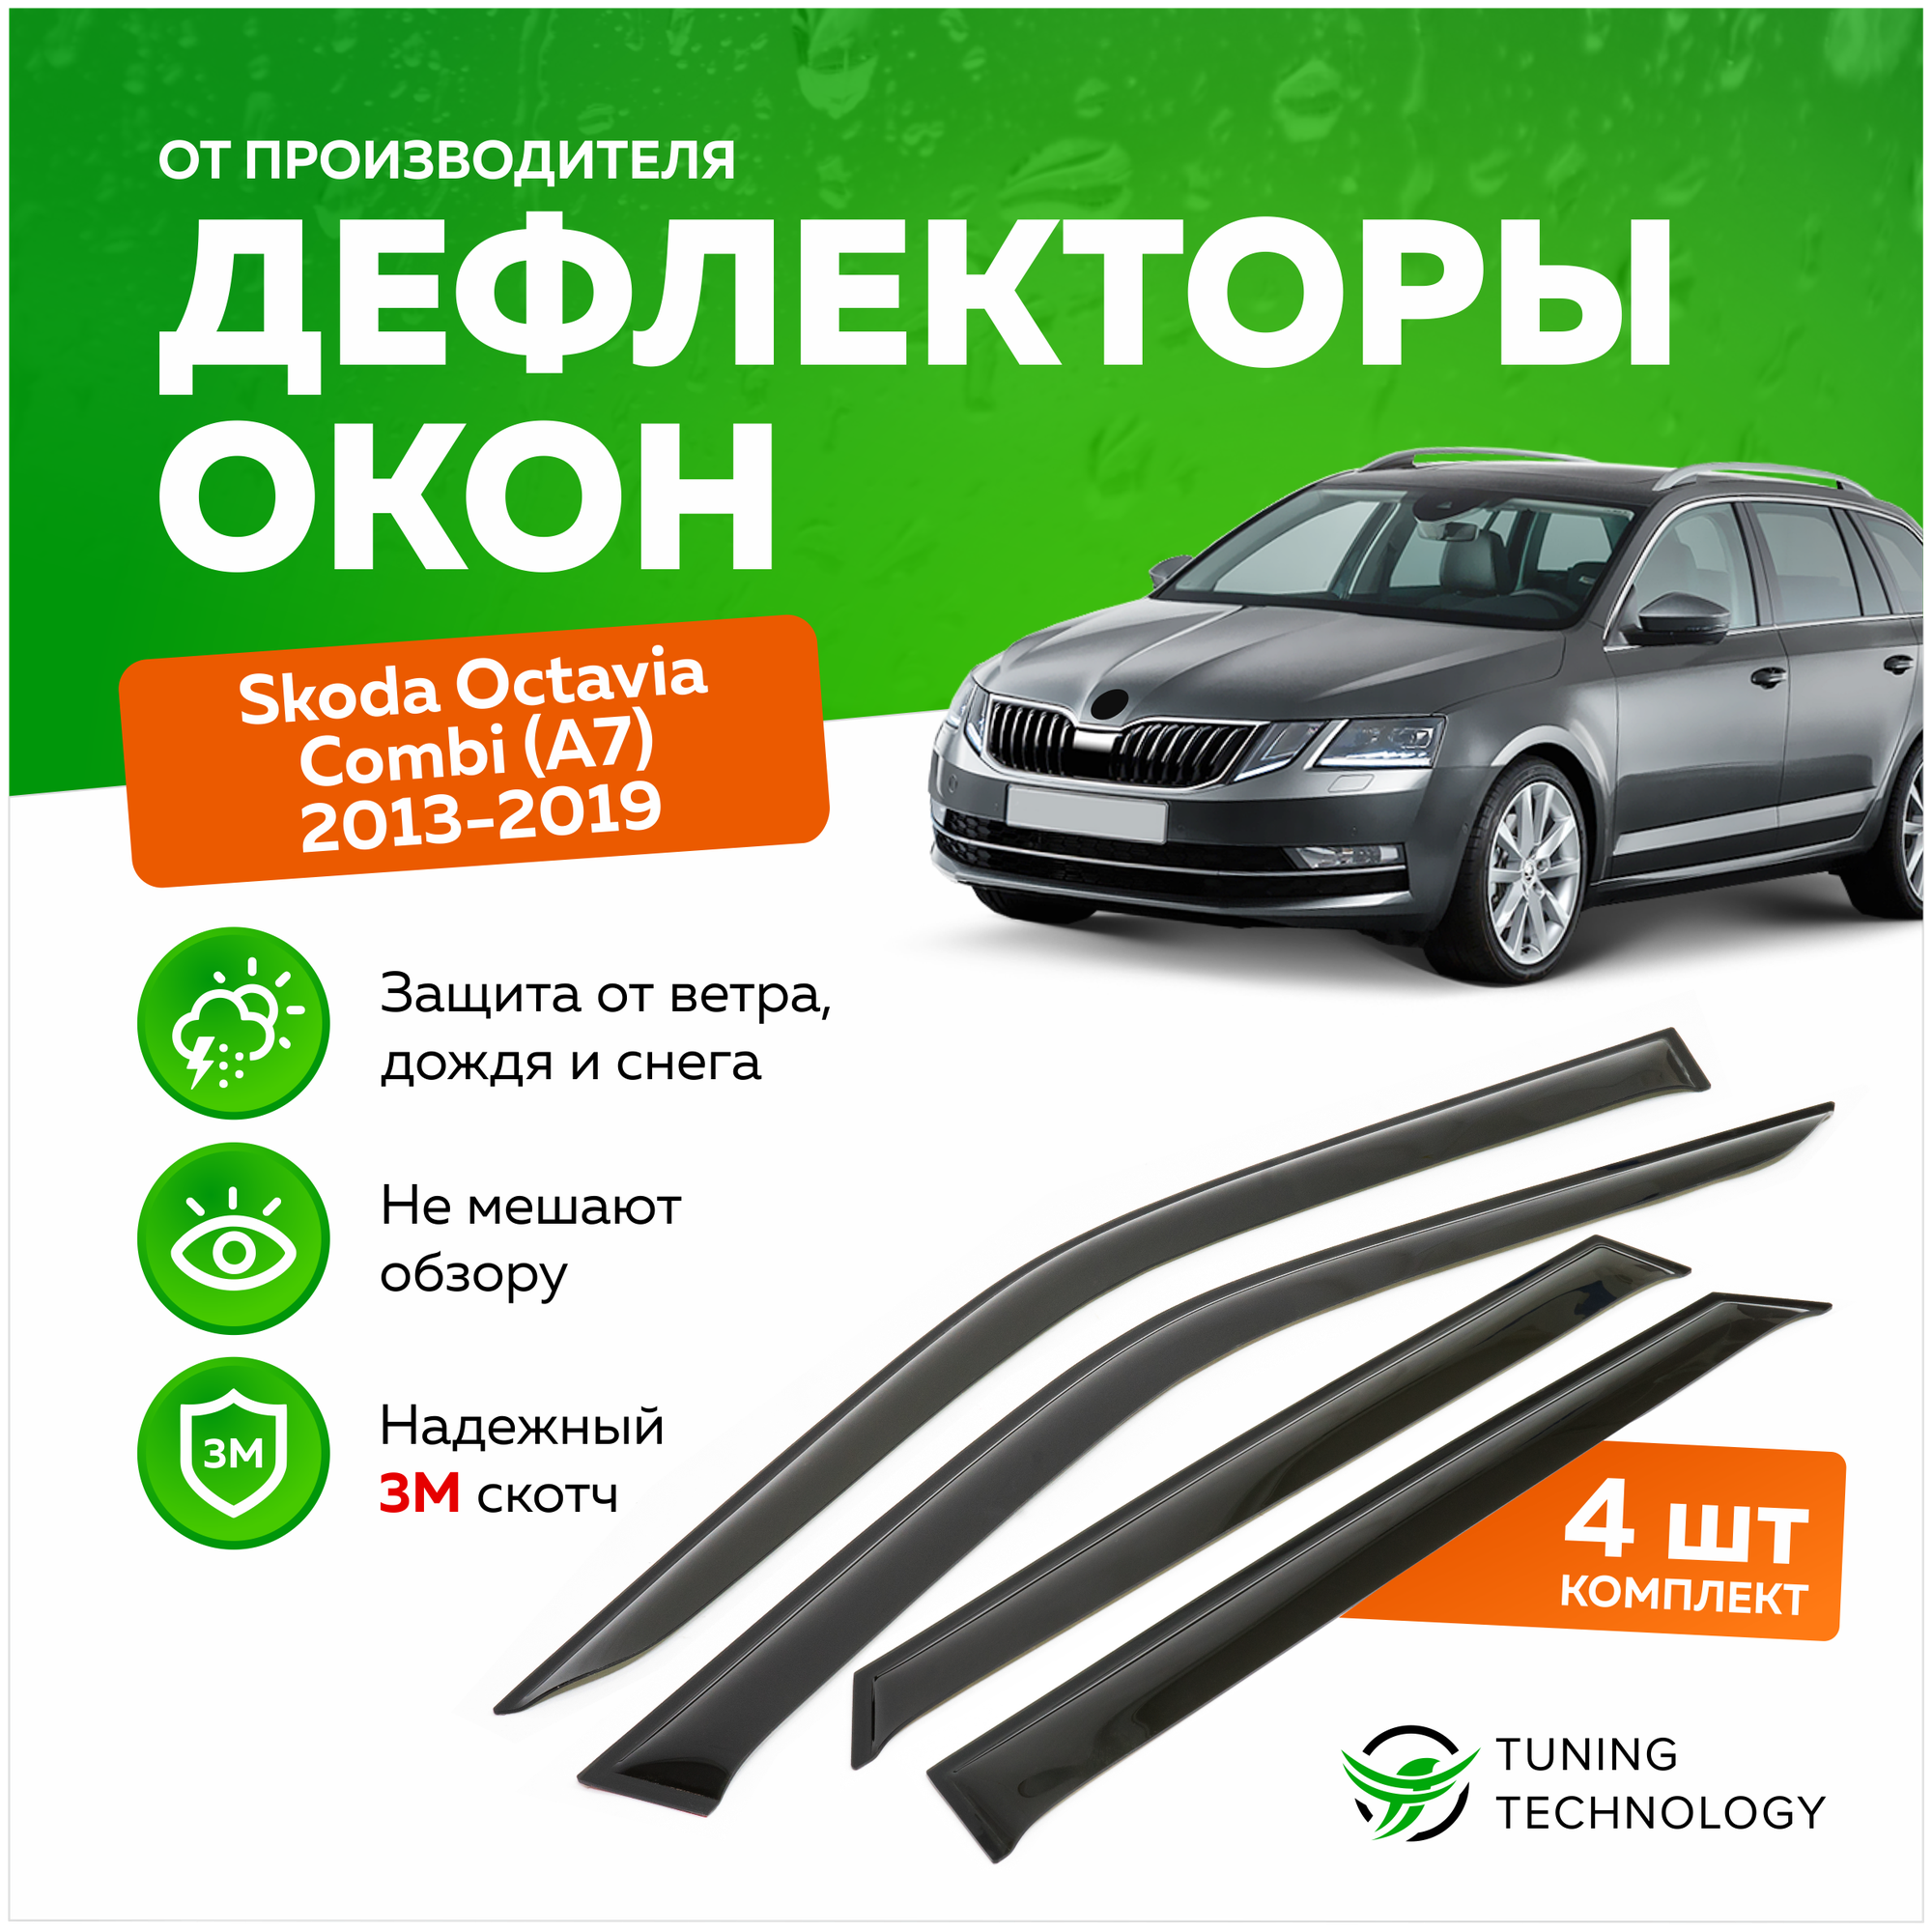 Дефлекторы боковых окон Skoda Octavia (Шкода Октавиа) Combi (универсал) A7 2013-2019, ветровики на двери автомобиля, ТТ